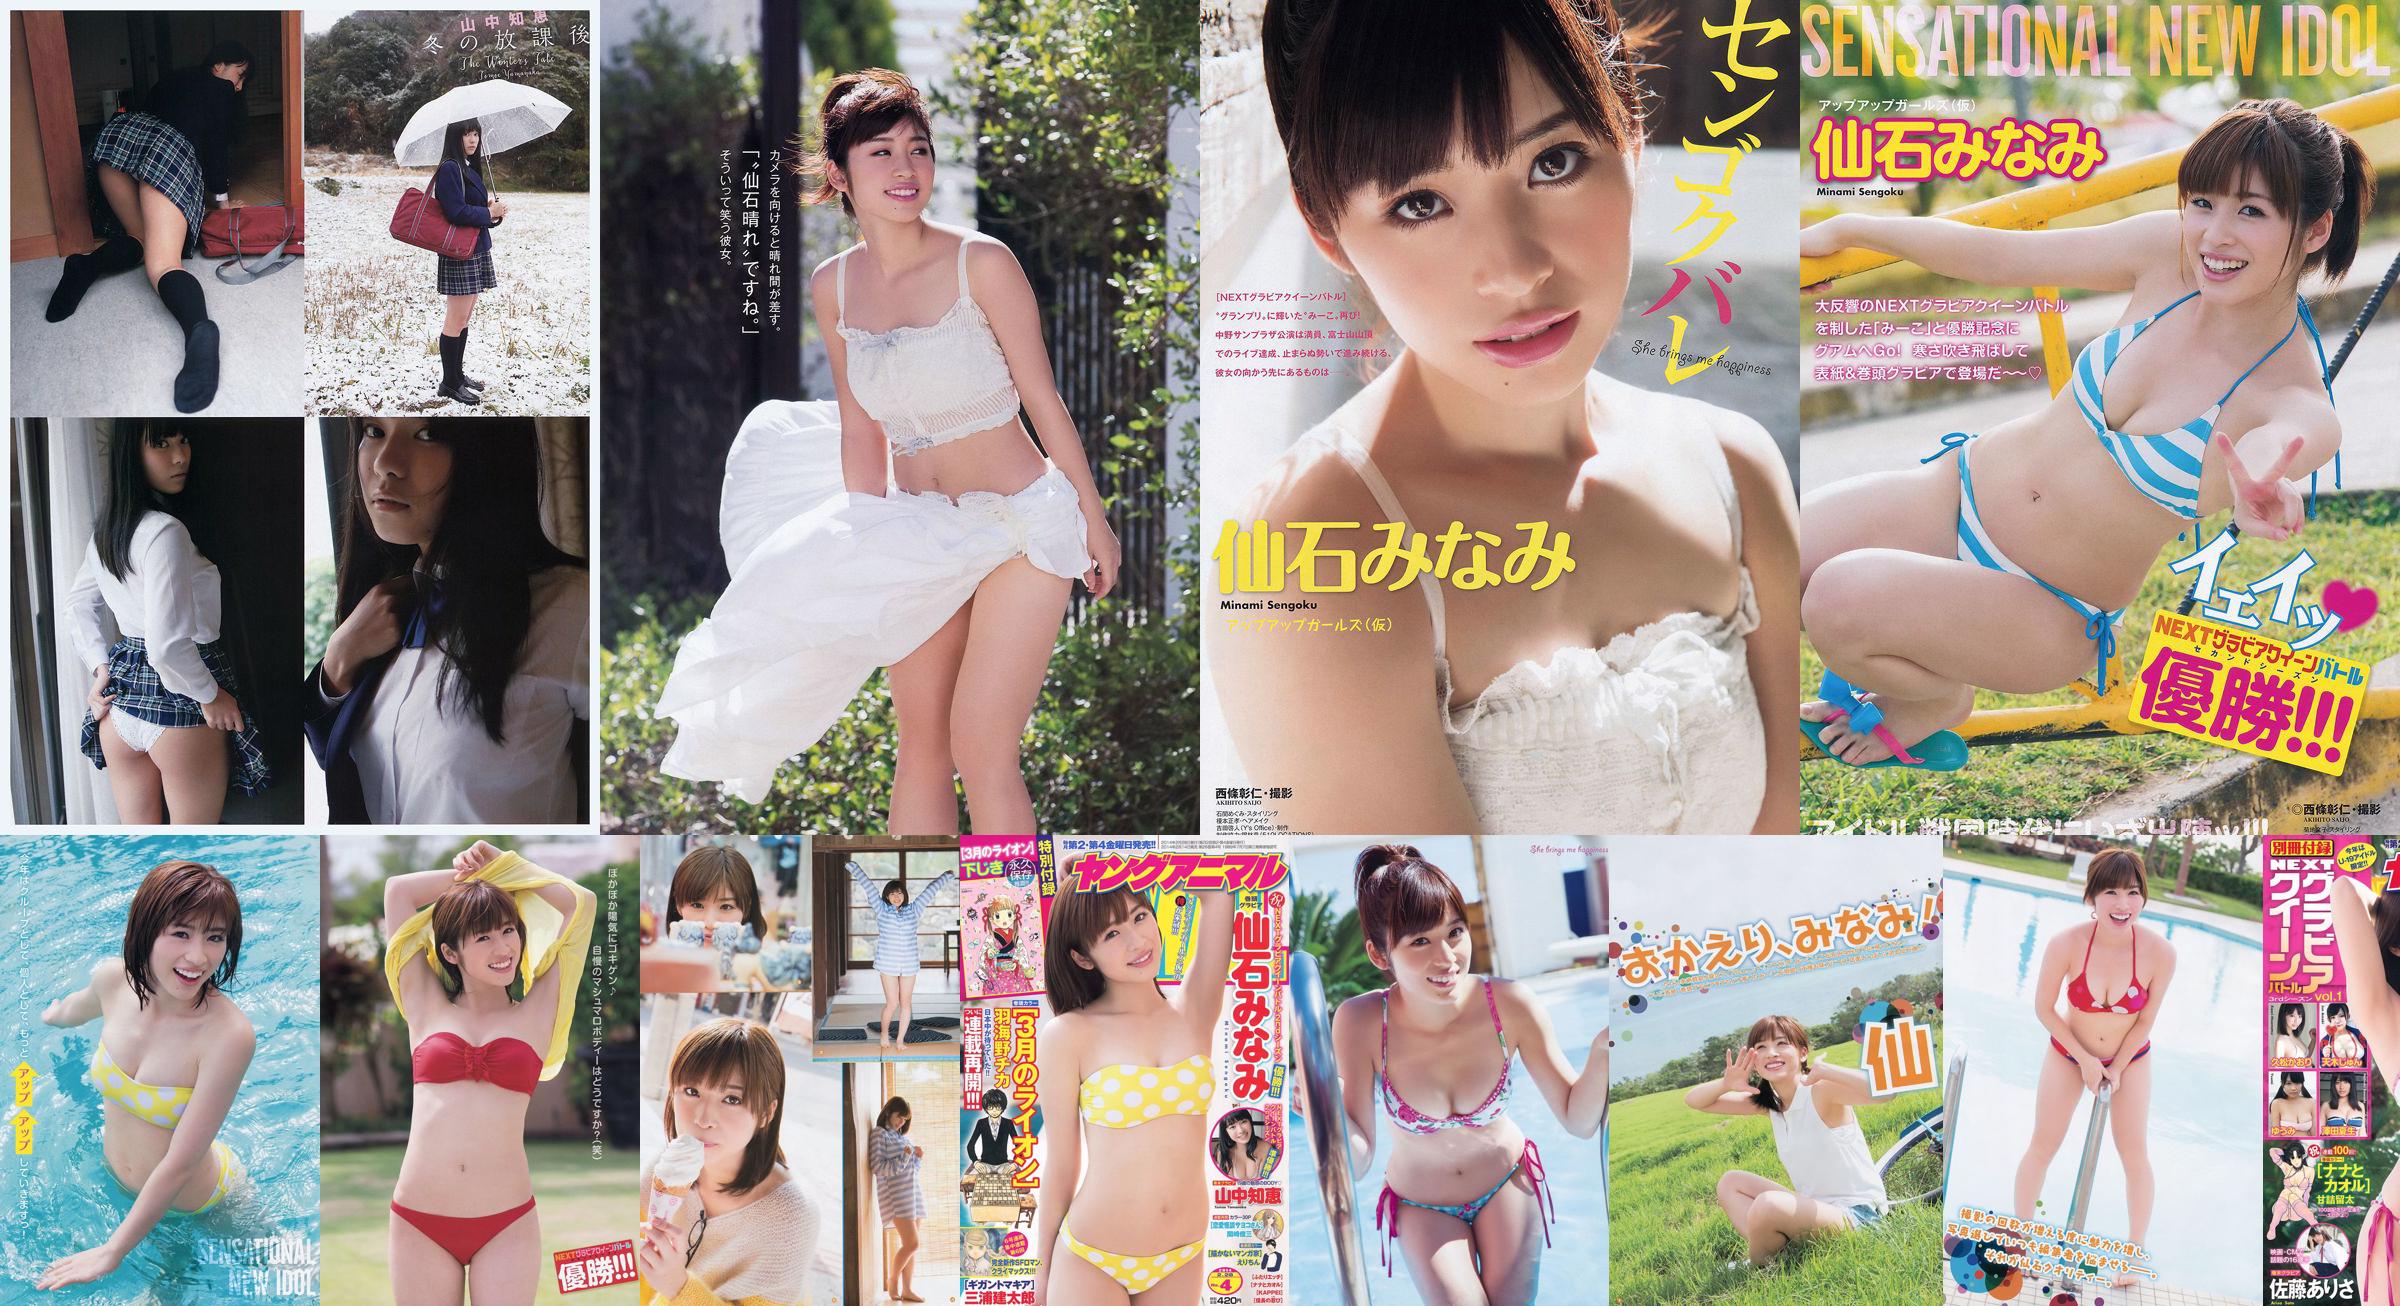 [Young Gangan] Senshi みなみ Yamanaka Tomoji Shiraishi アヤ Kataoka Saya 2014 No.01 Photo Magazine No.ab926e Pagina 6